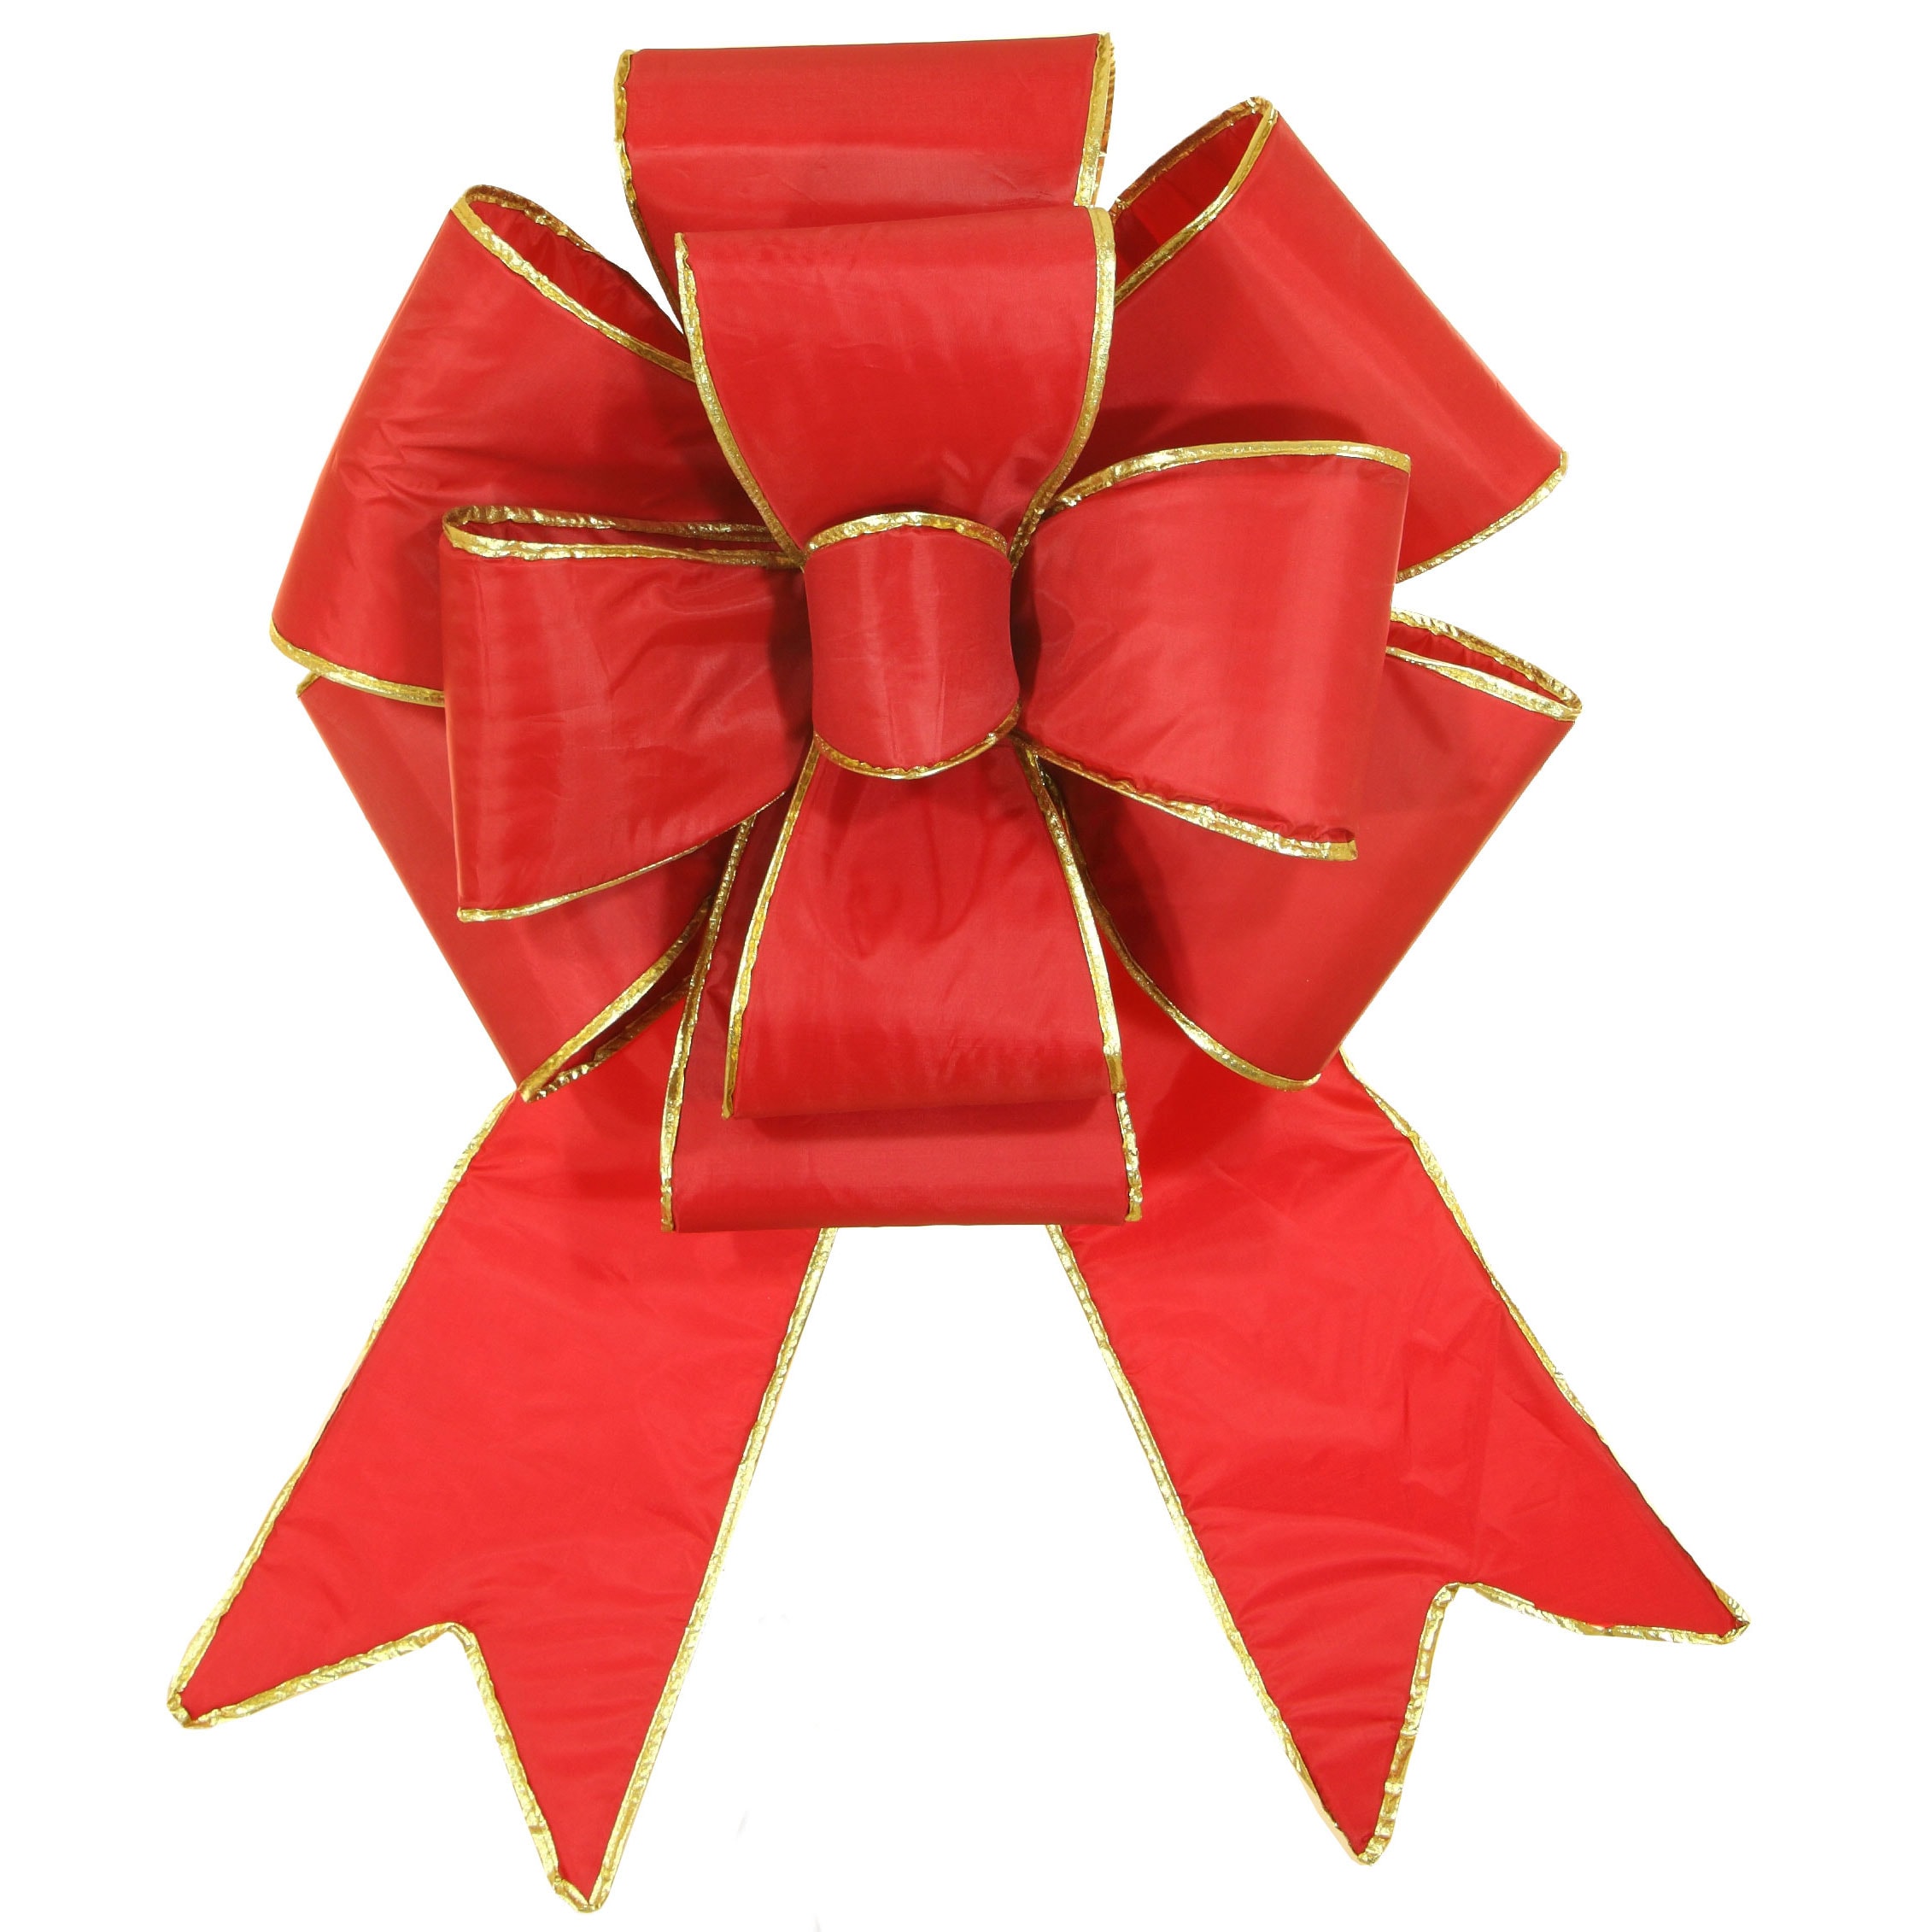 Red Decorative Bows & Ribbon at